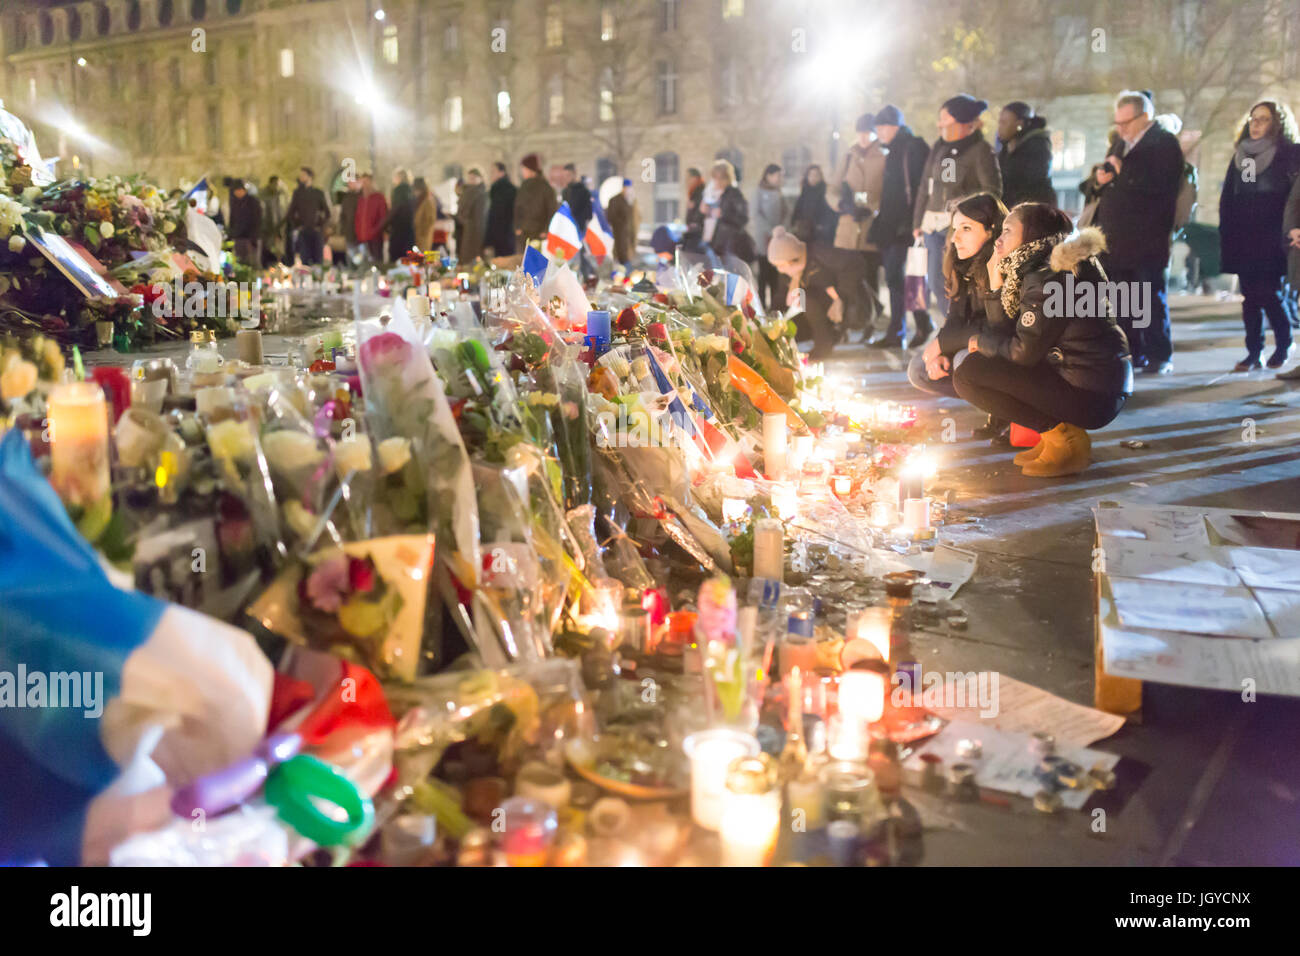 2 Mädchen Trauer vor Statue de la republiqueSpontaneous Hommage an die Opfer der Terroranschläge in Paris, den 13. November 2015. Stockfoto